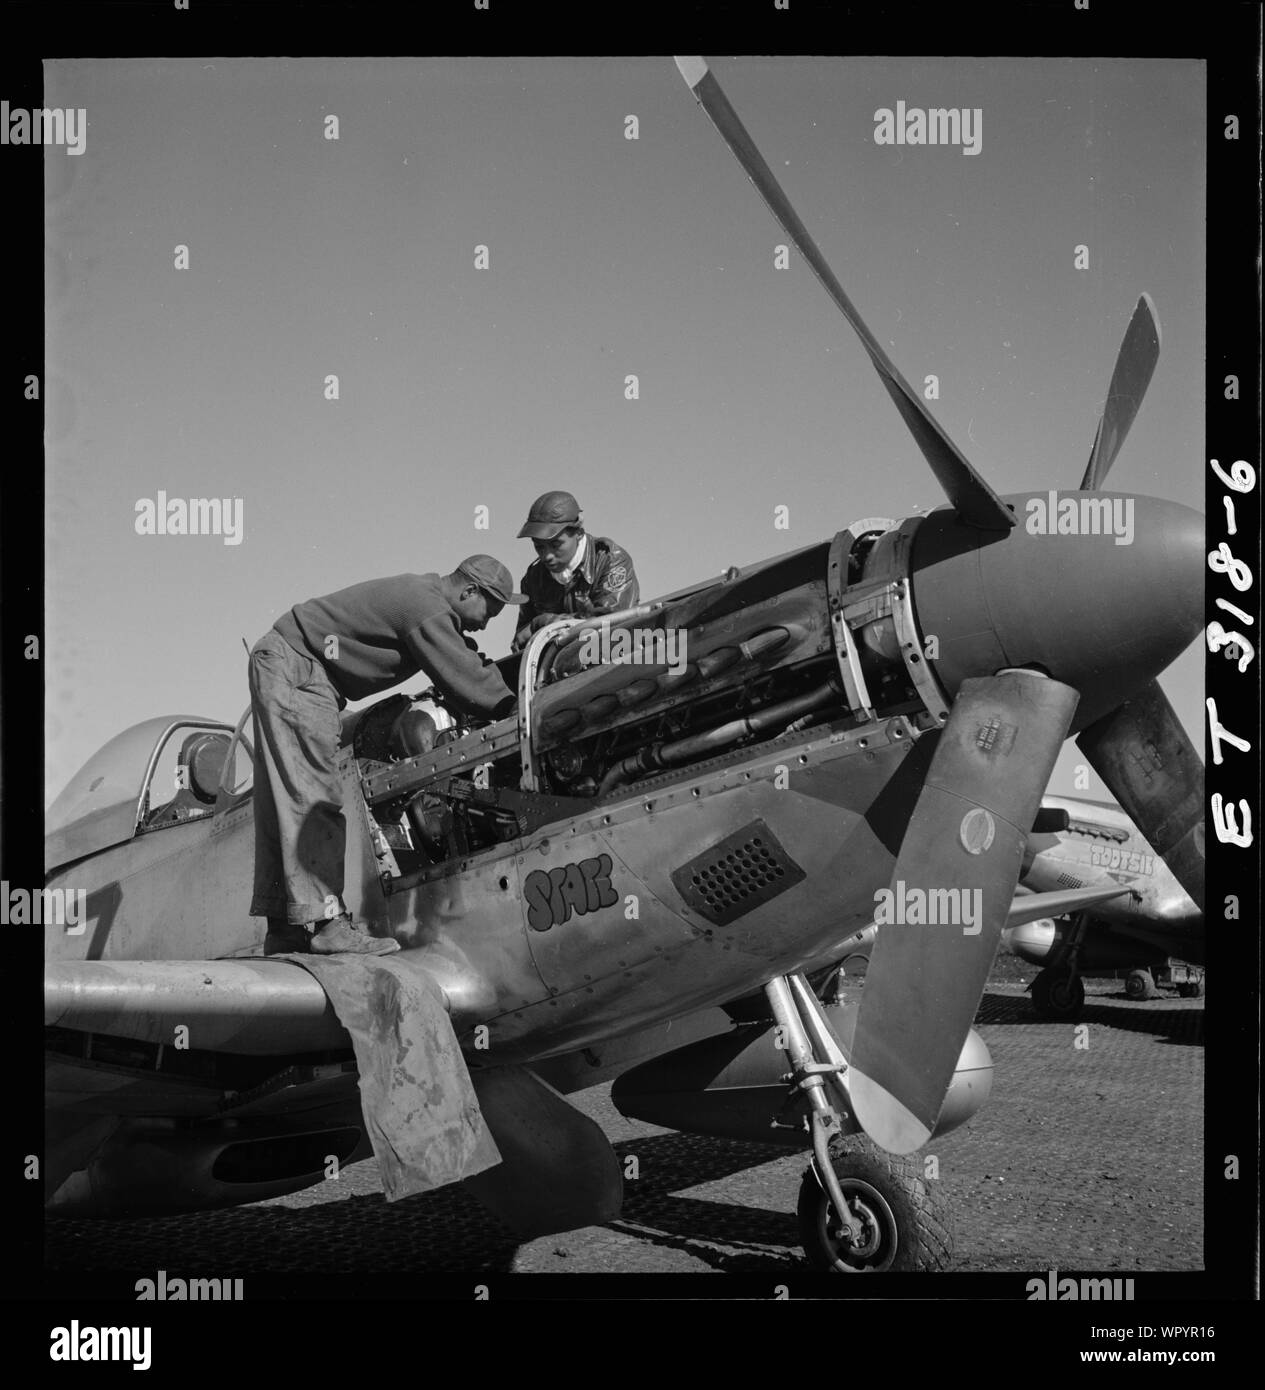 [Tuskegee Airmen Marcellus G. Smith und Roscoe C. Braun, Ramitelli, Italien, März 1945]; Foto zeigt von links nach rechts, von Marcellus G. Smith, Louisville, Kentucky, und Roscoe C. Braun, New York, NY Klasse 44-C. P-SC #11, Tootsie, im Hintergrund wurde in Lowell Verwalter zugewiesen. Ramitelli, Italien, März 1945. (Quelle: Tuskegee Airmen 332 Fighter Group Piloten.); Stockfoto